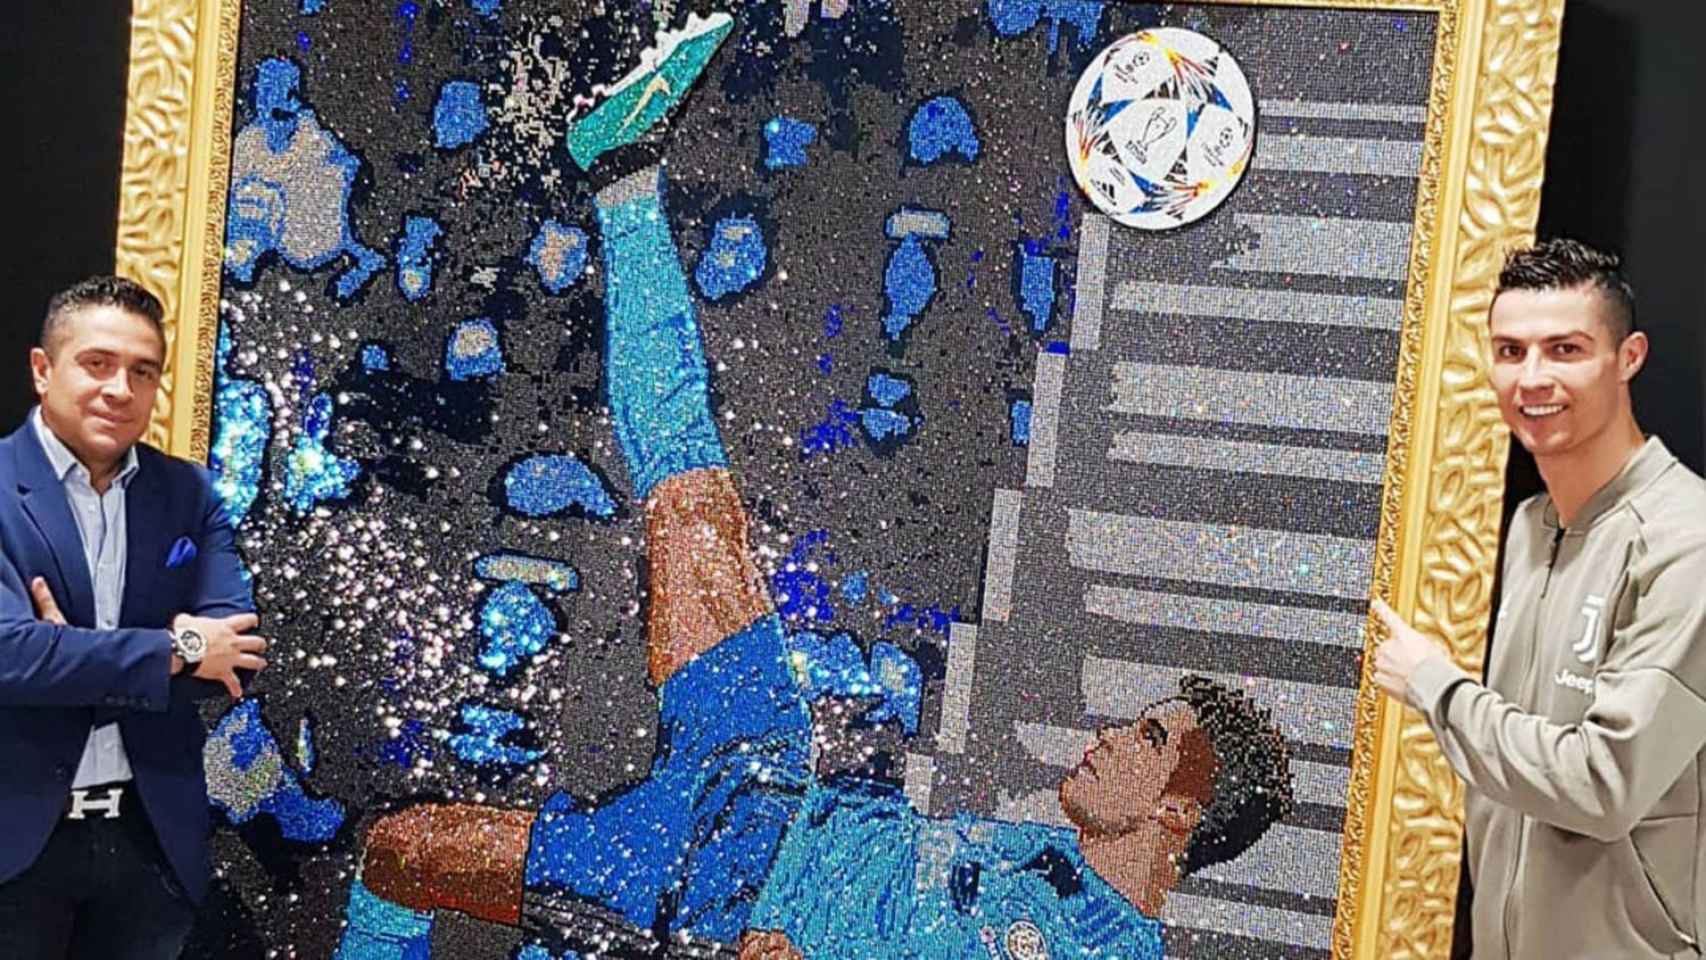 Mr. Bling obsequia a Cristiano Ronaldo con un enorme cuadro de la chilena echo con millones de cristales Swarovski